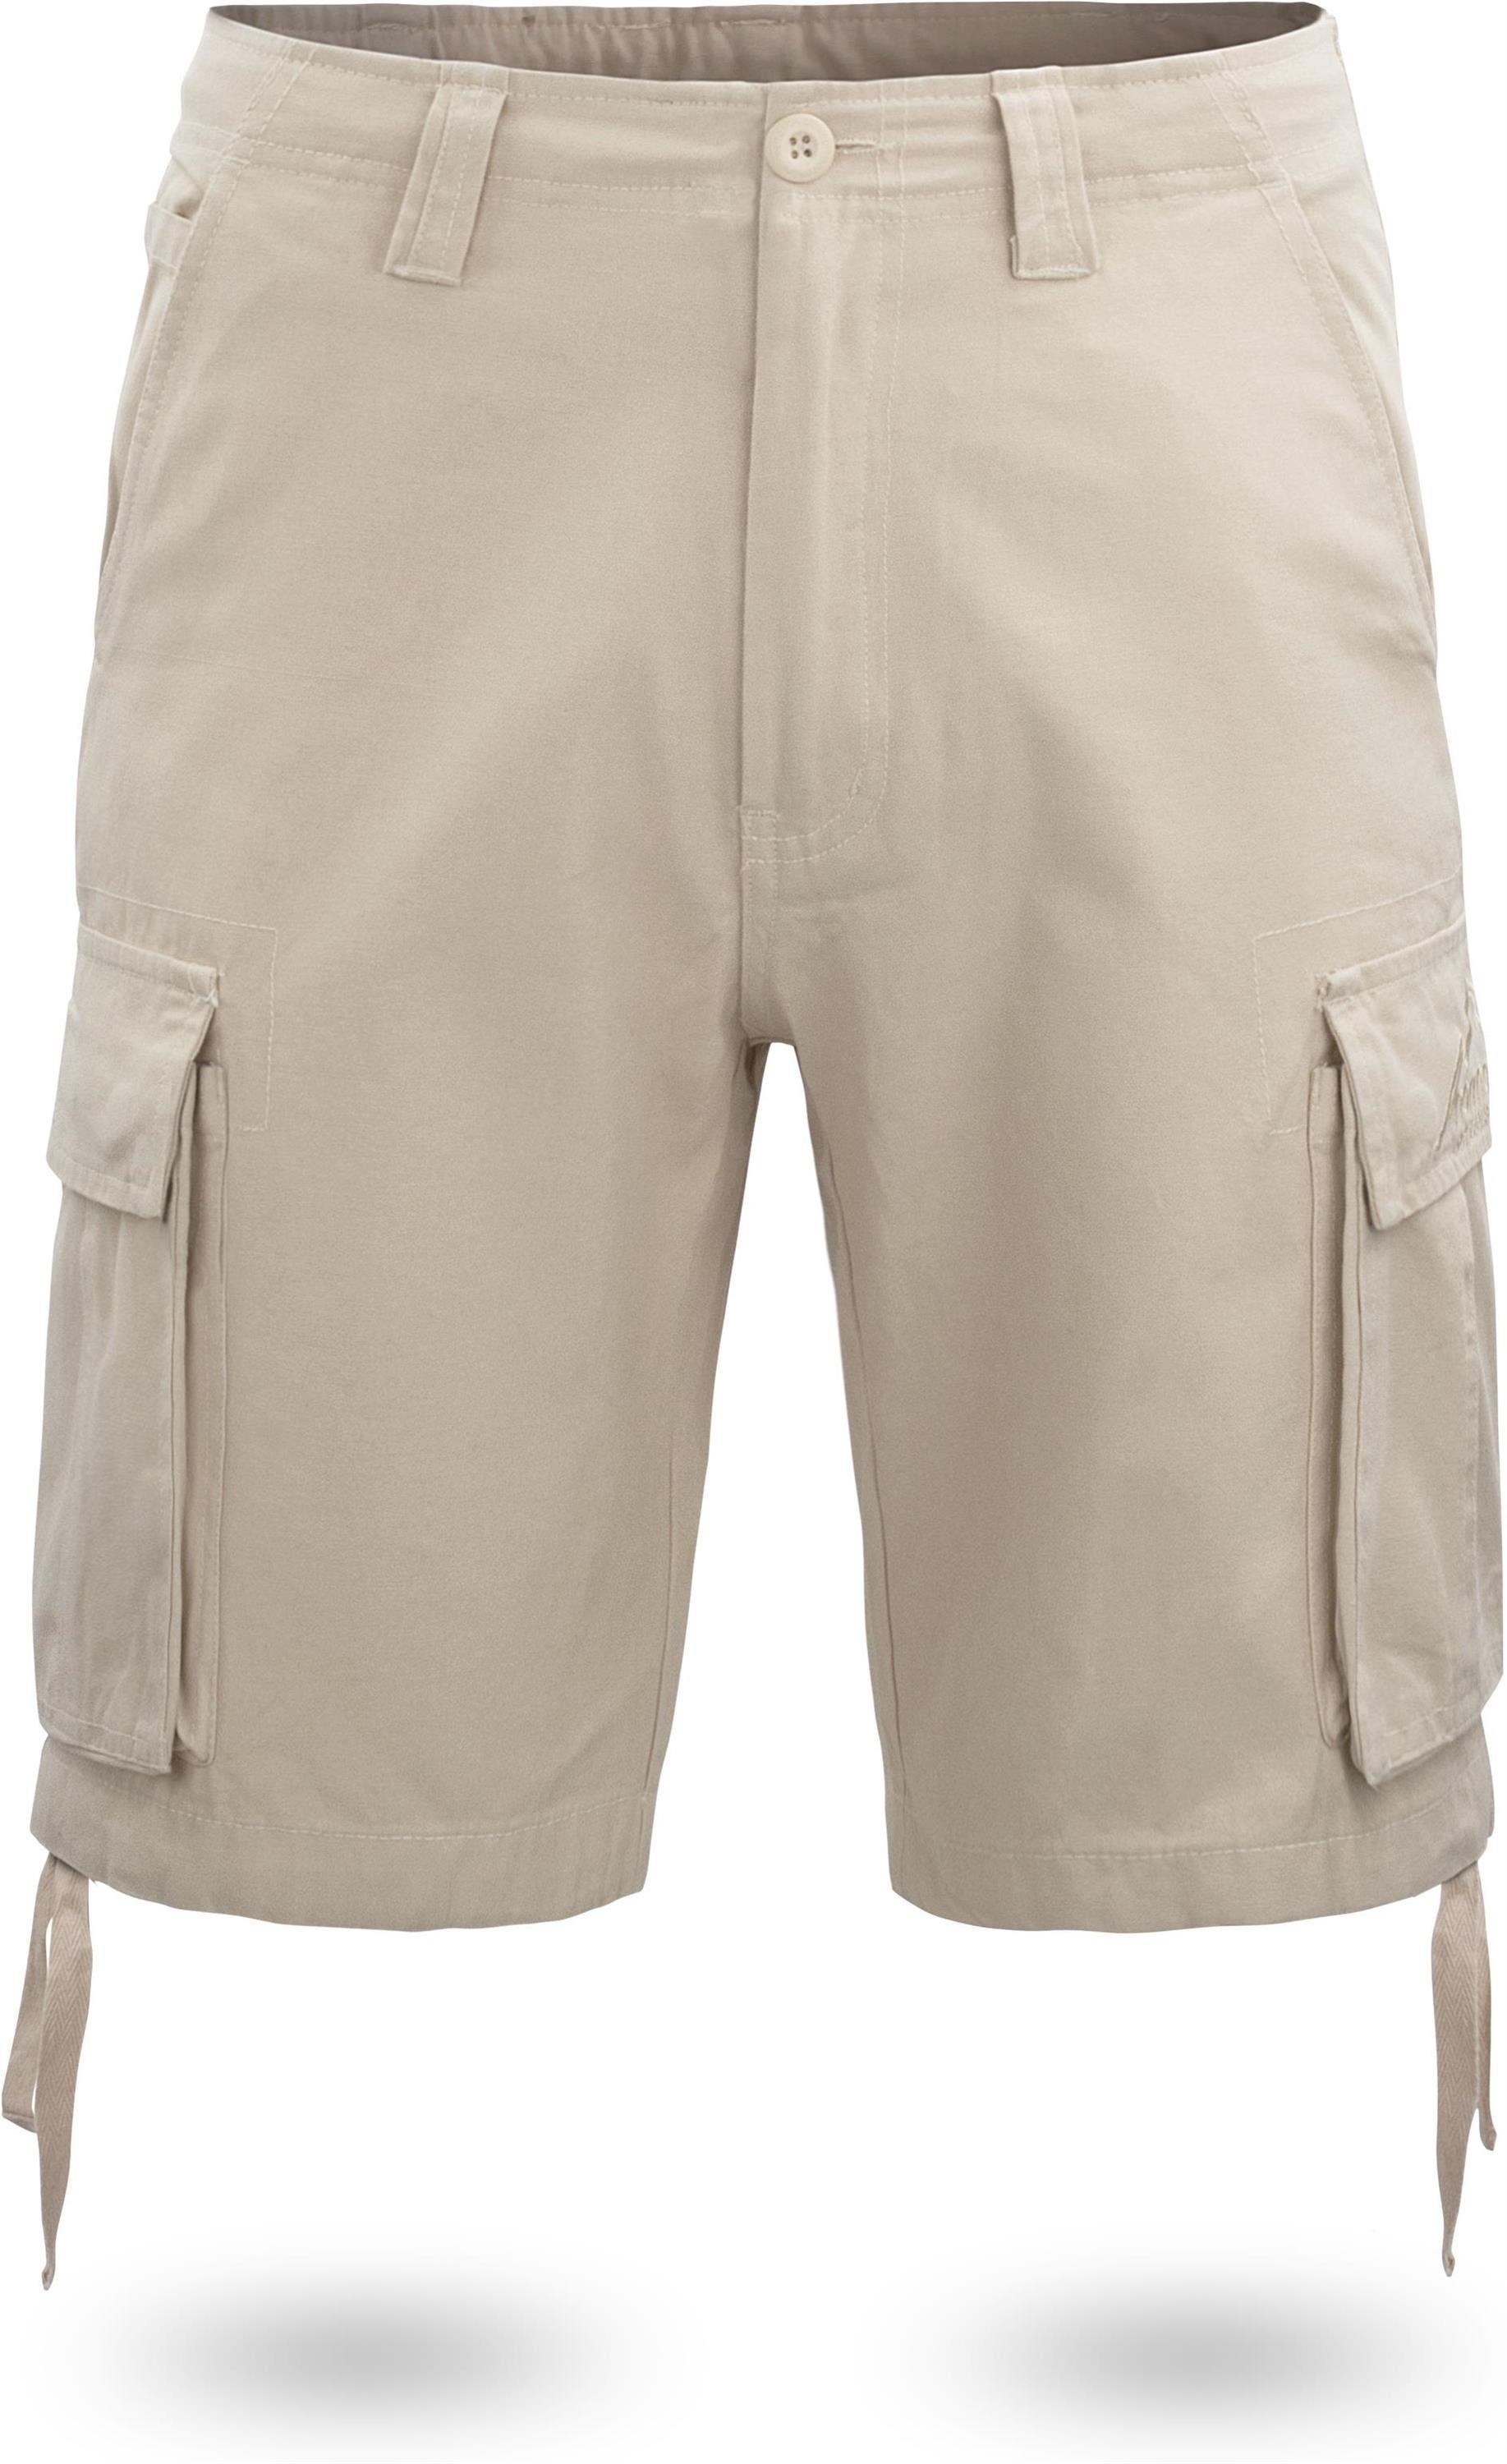 normani Bermudas Herren Shorts Kalahari Vintage Shorts kurze Sommershorts mit Cargotaschen aus 100% Bio-Baumwolle Khaki